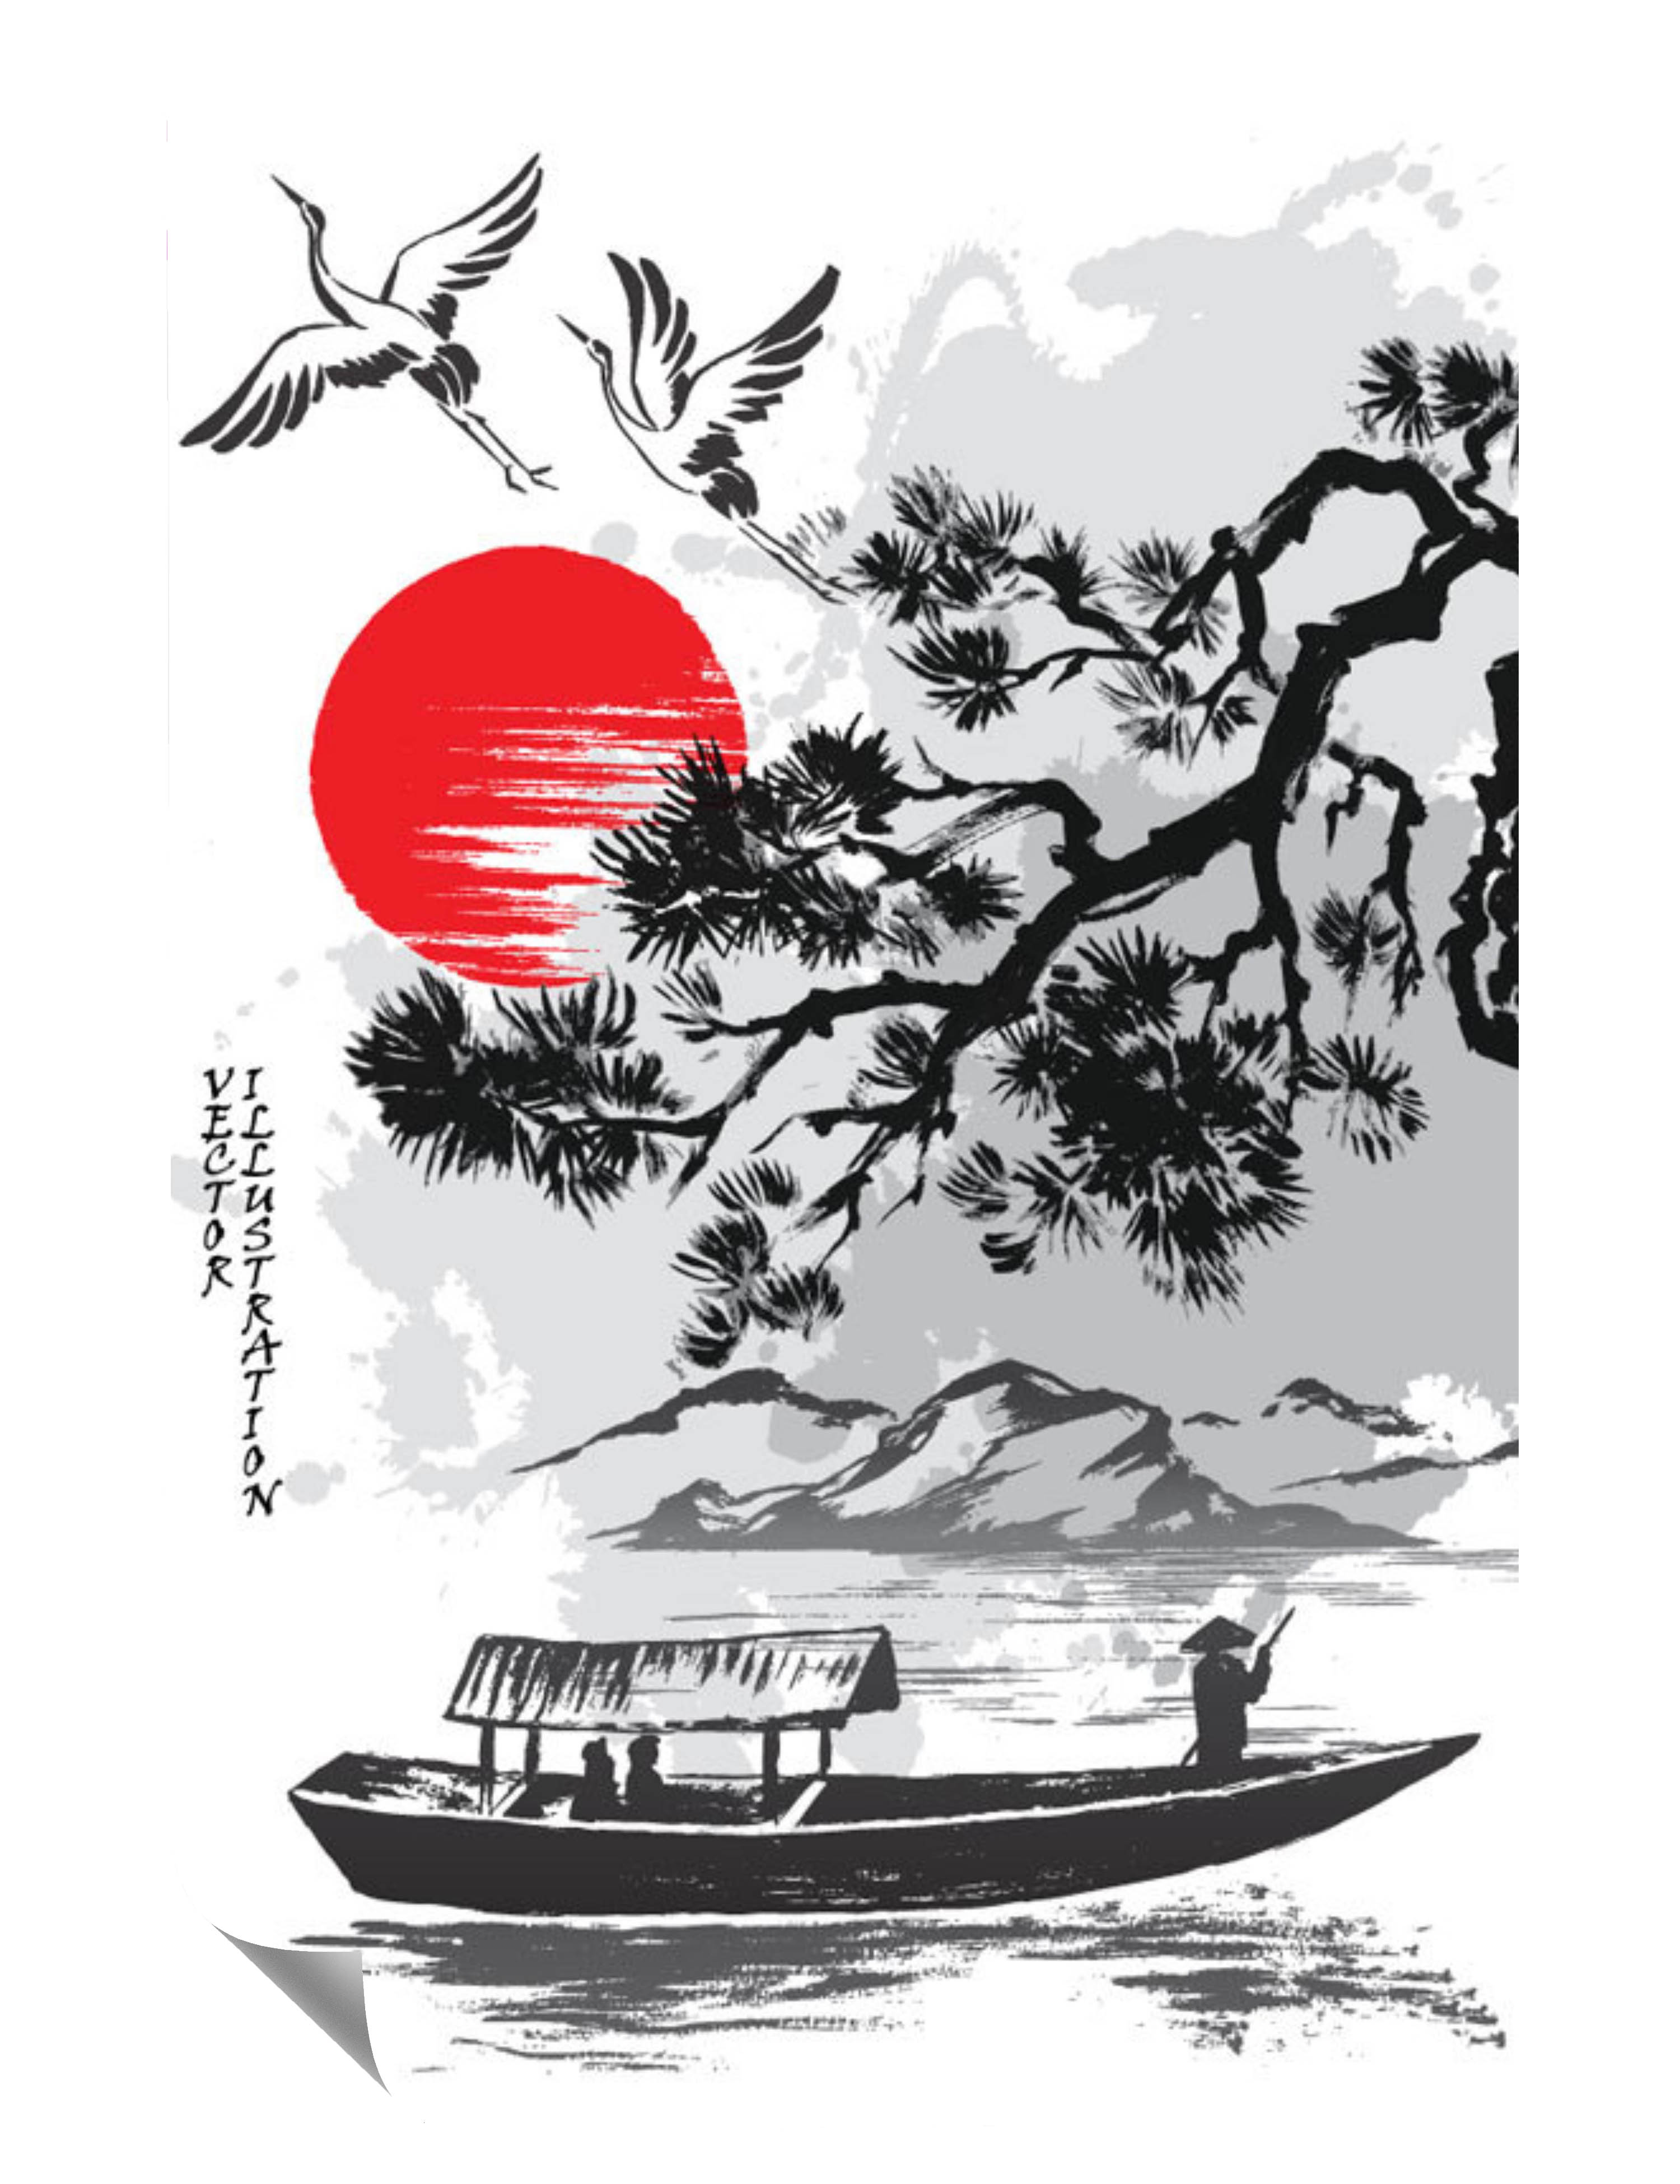 Asiatisches Boot  Baum  See  Gebirge Störche Sonne Poster P0080